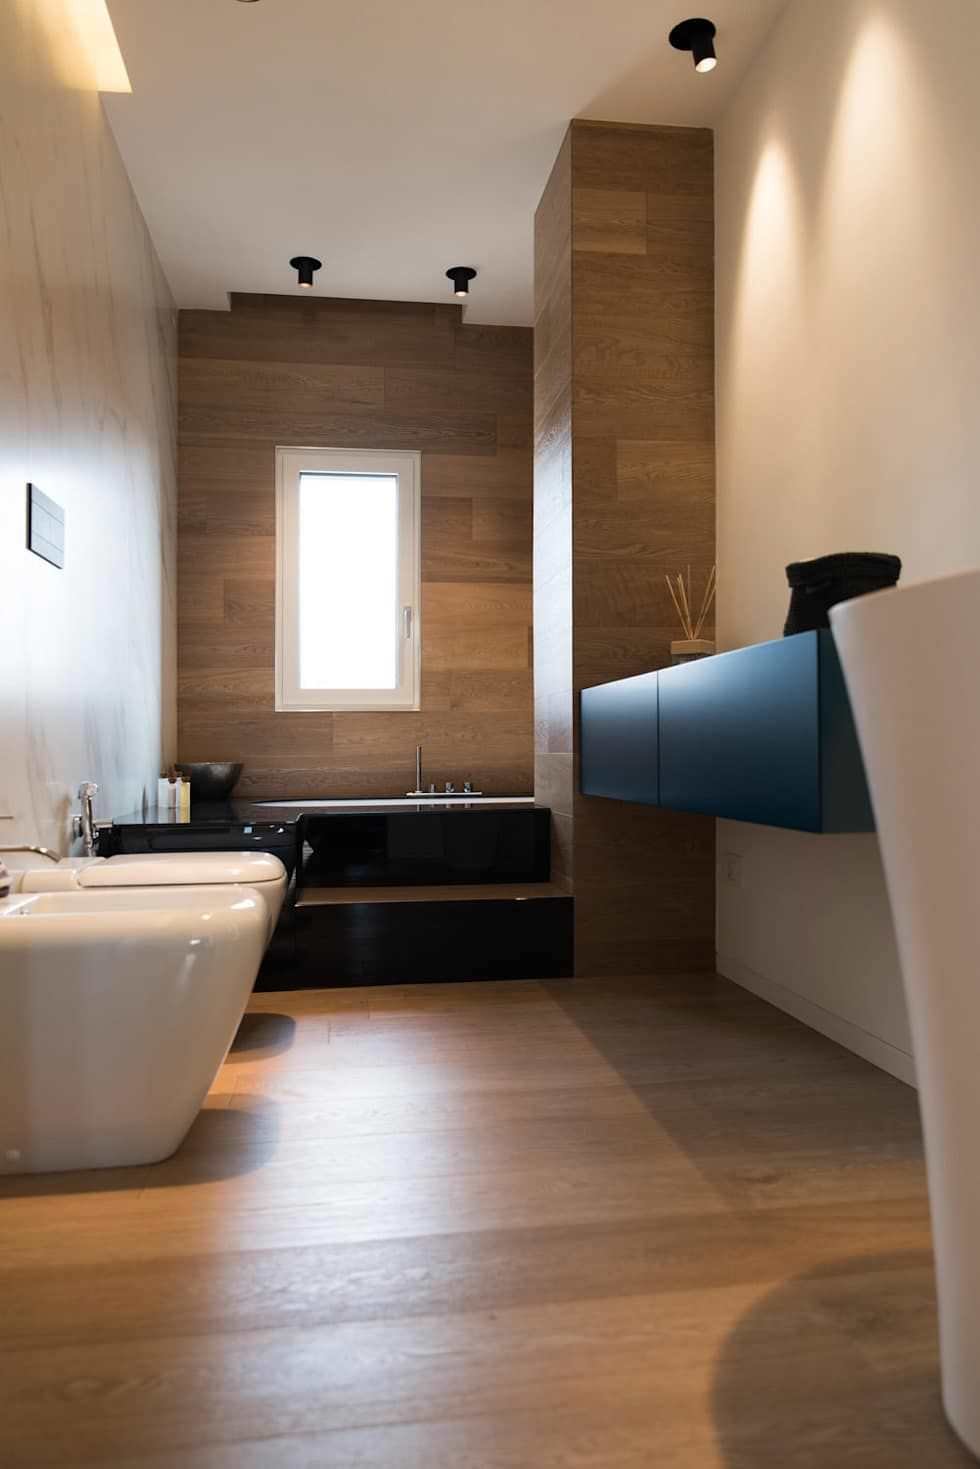 Bagno piccolo moderno ed elegante con pavimenti e rivestimento in legno ed una bellissima vasca. Colori a contrasto: bianco e nero.